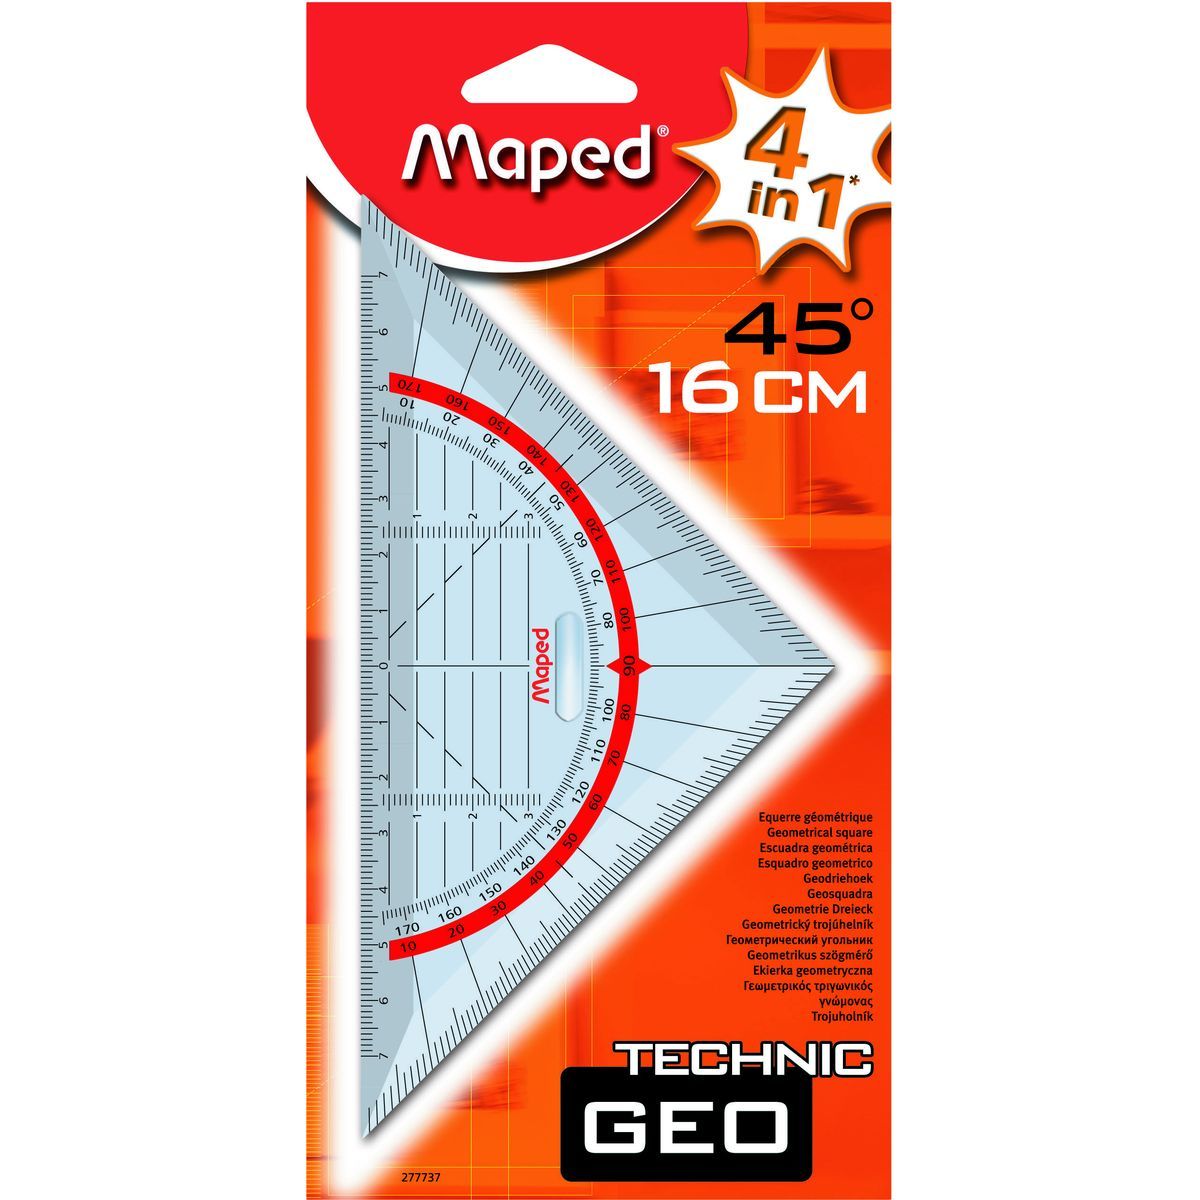 MAPED Equerre géométrique 4 en 1 Technic Geo 45° 16cm pas cher 